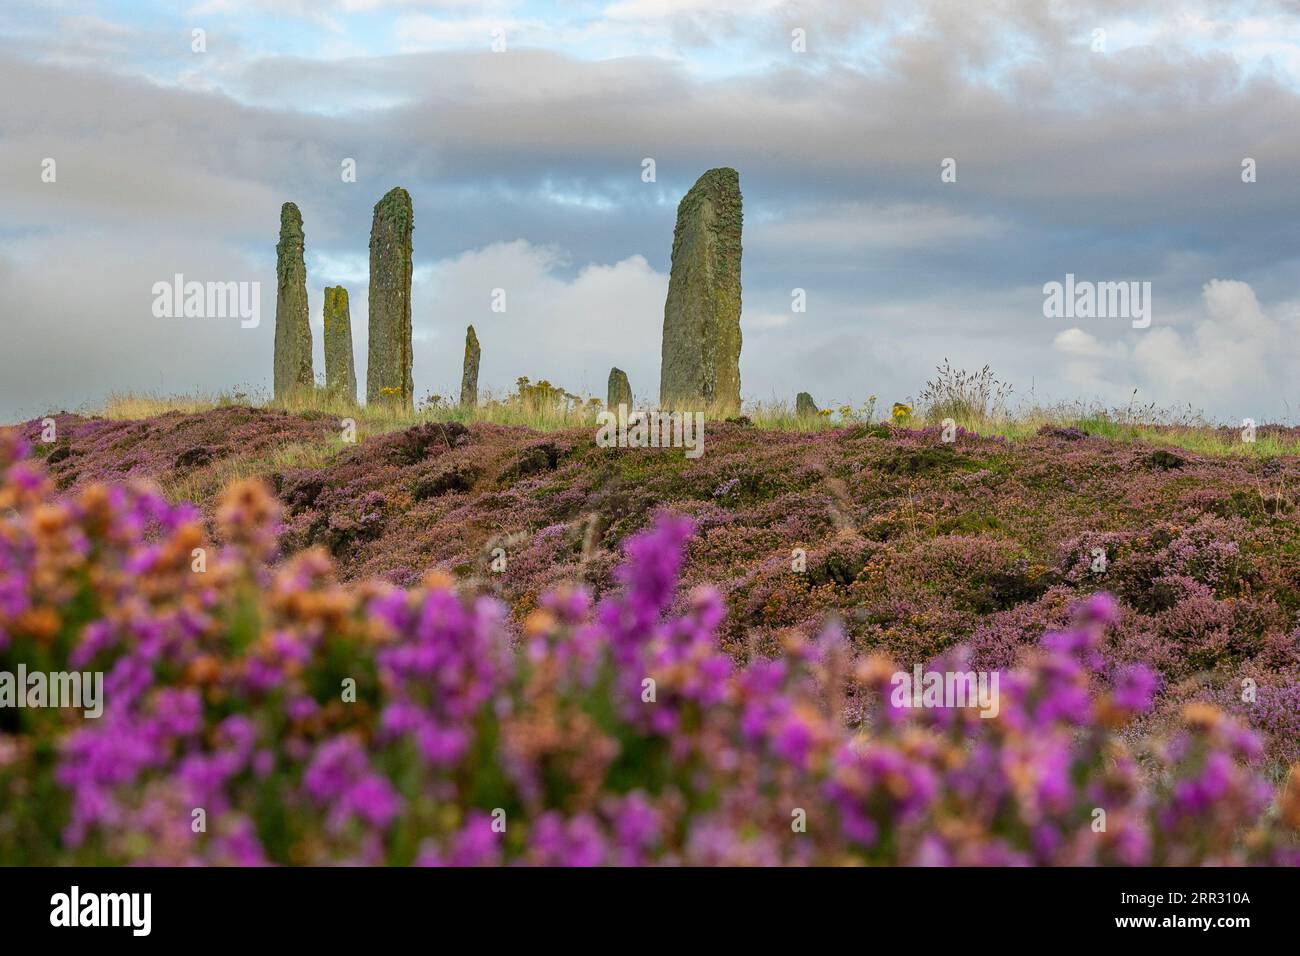 Lumière matinale à Ring of Brodgar henge néolithique et cercle de pierre à West Mainland, îles Orcades, Écosse, Royaume-Uni. Banque D'Images